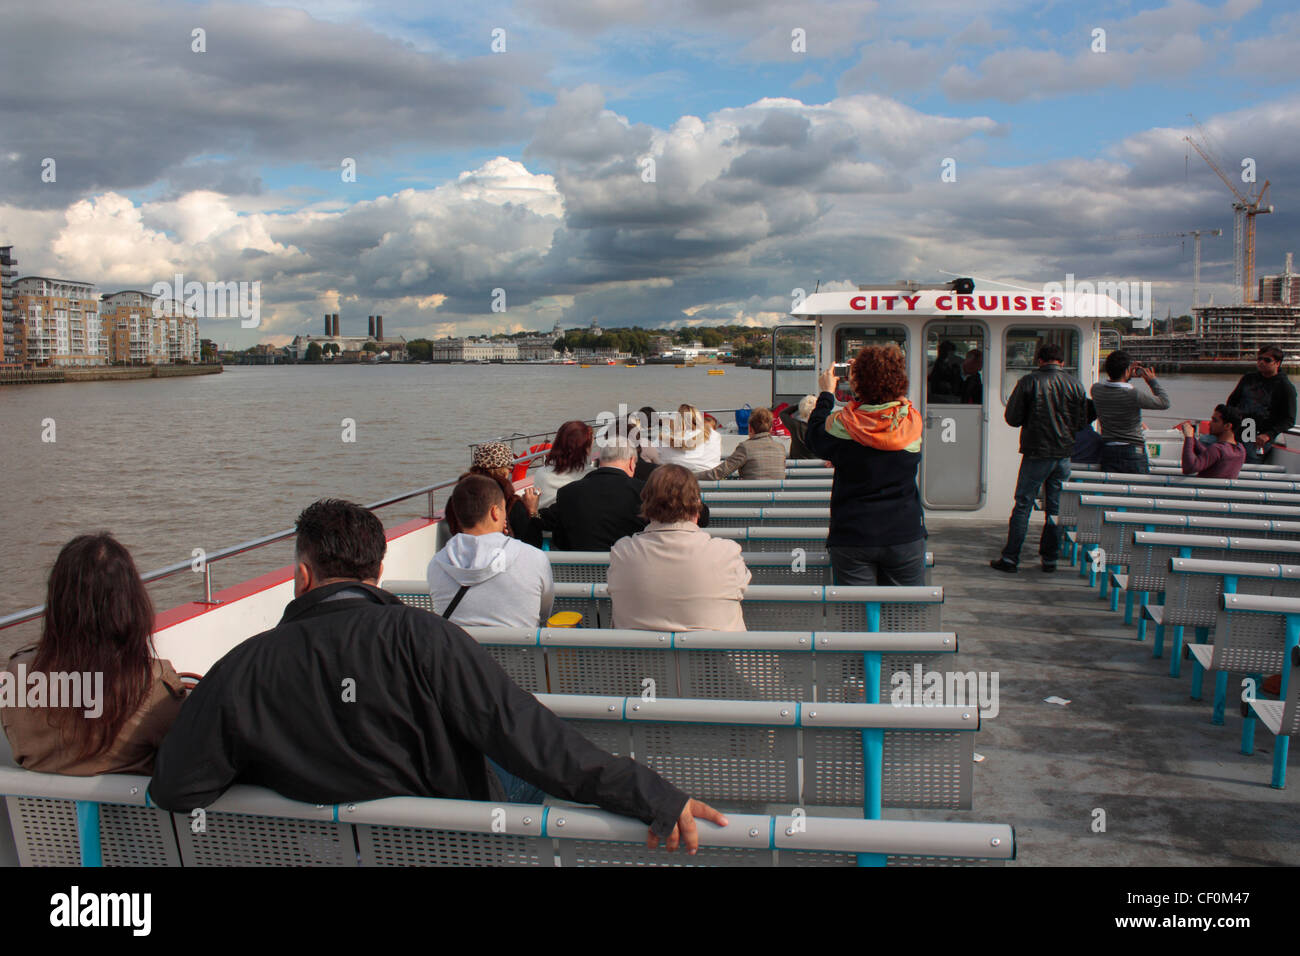 Menschen Sightseeing auf eine Bootsfahrt auf der Themse, London, UK. Urlaub Tourismus in Großbritannien. Stockfoto